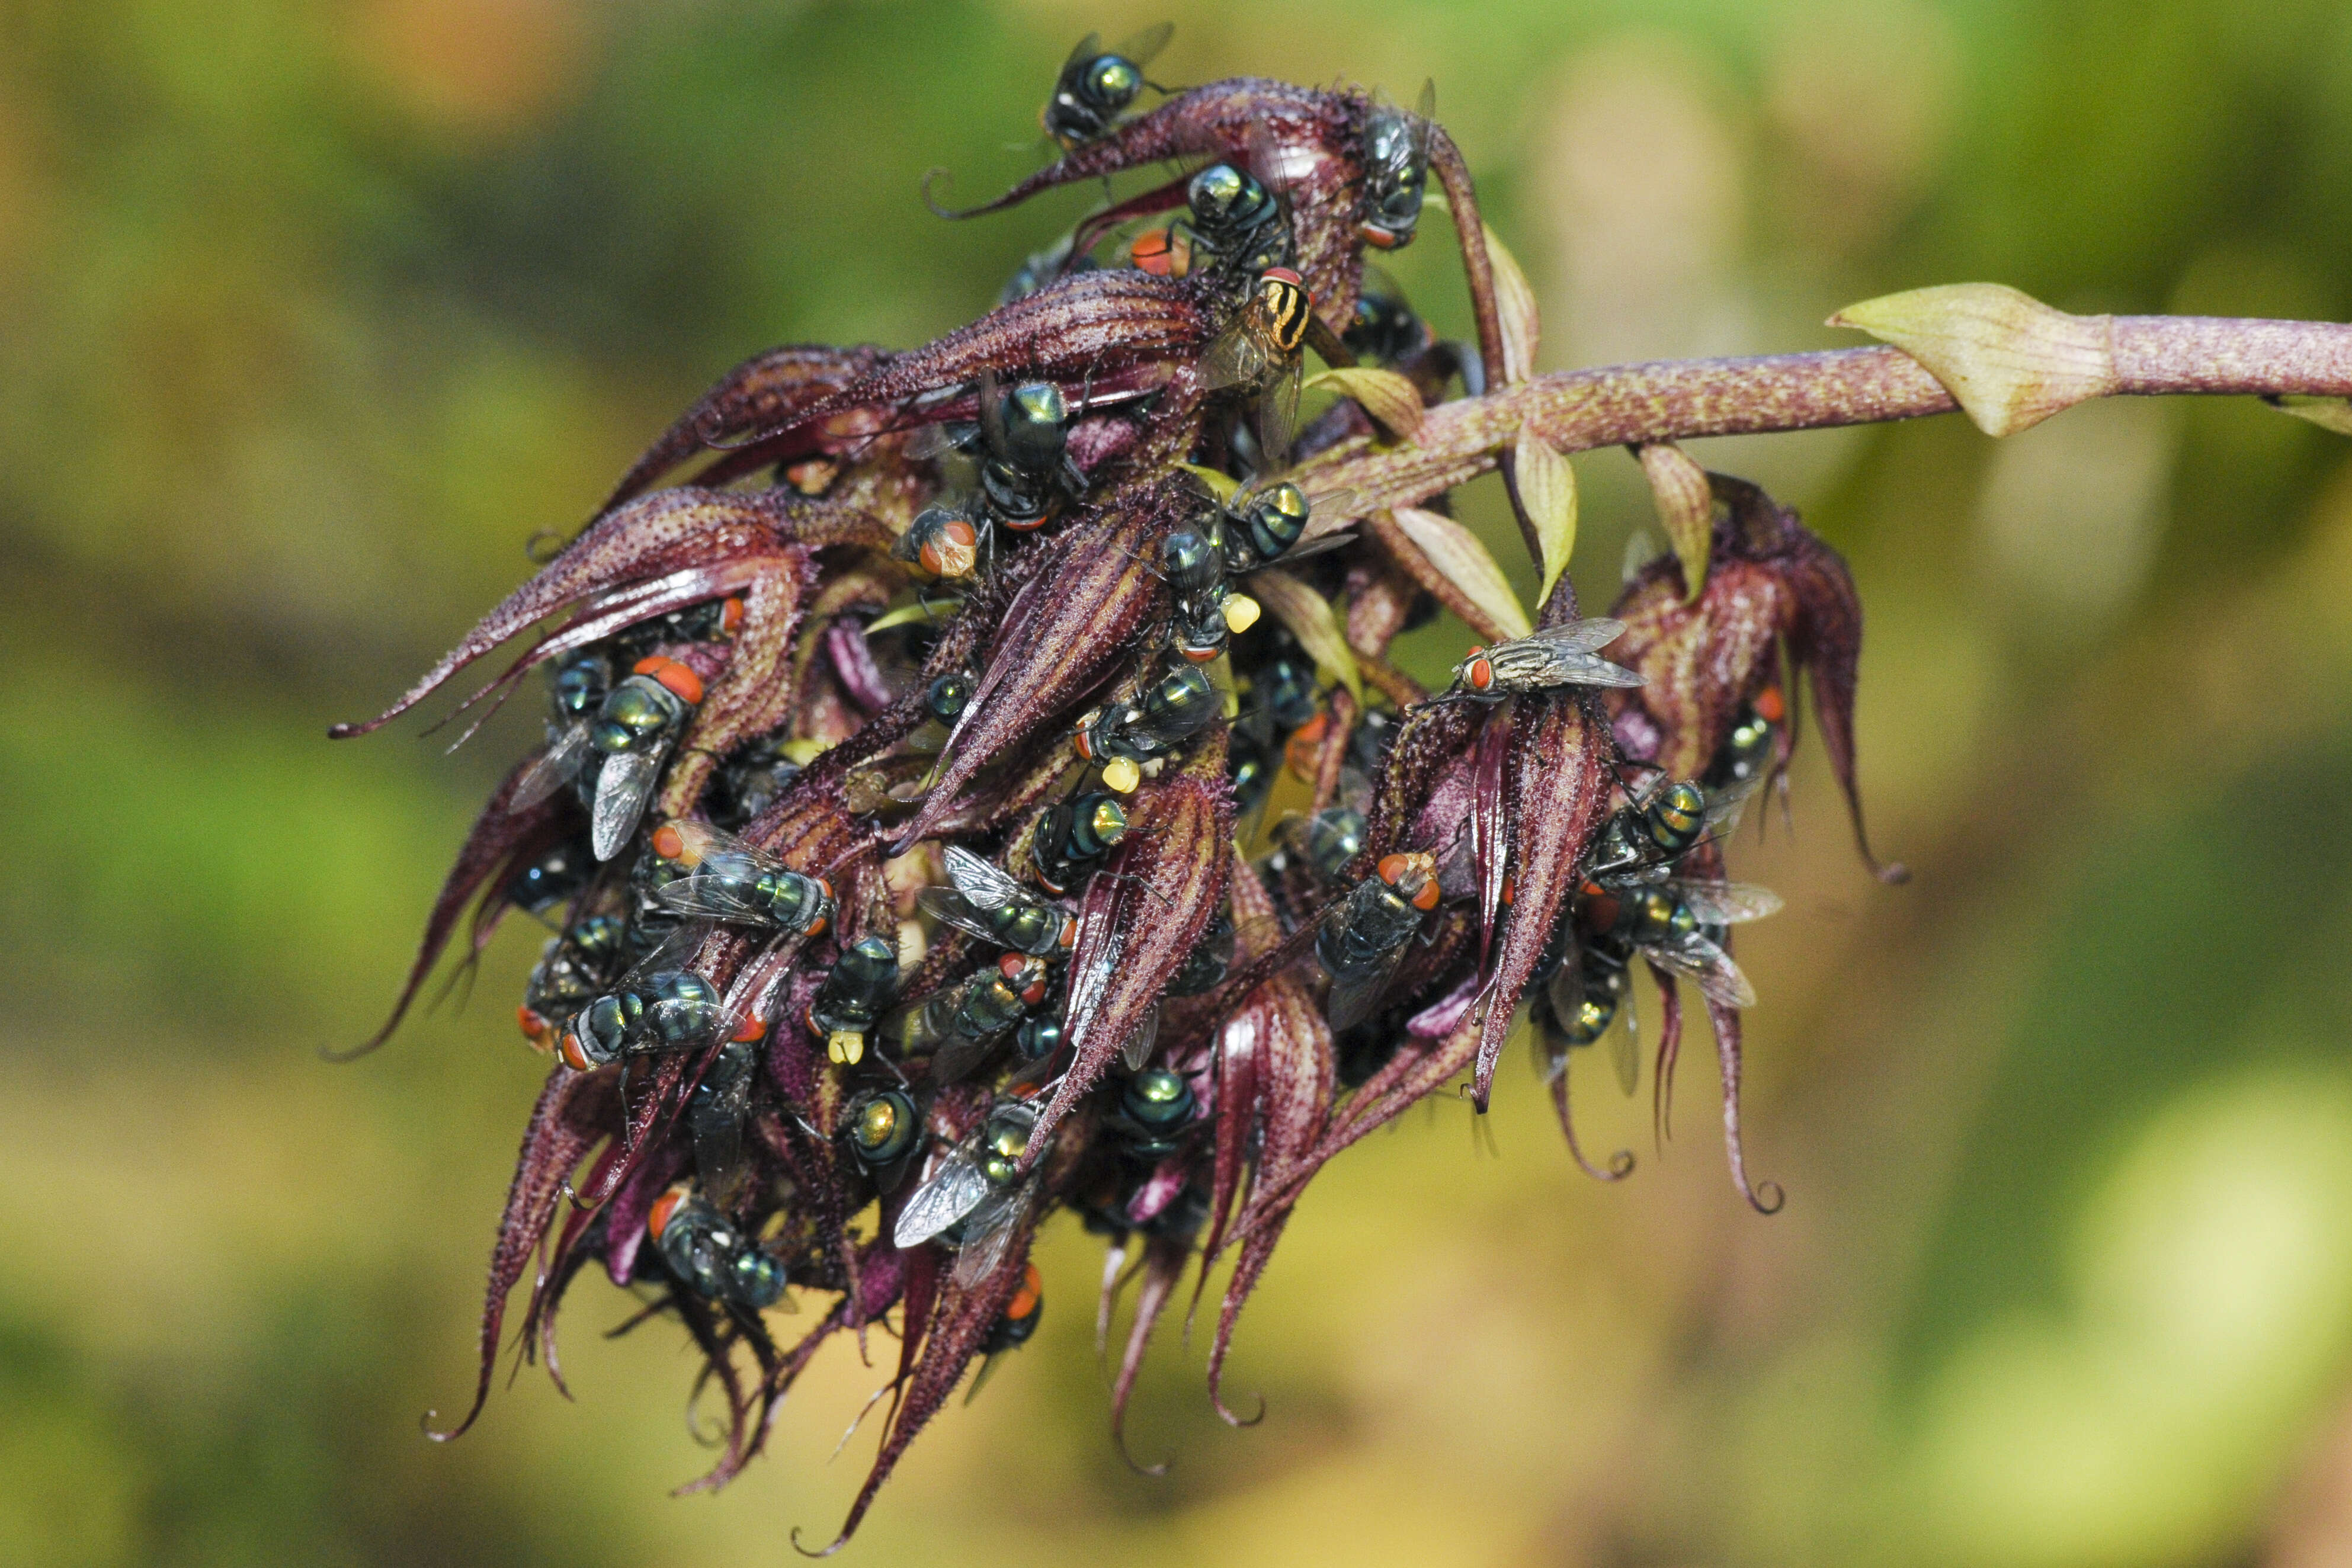 Image of Bulbophyllum lasianthum Lindl.